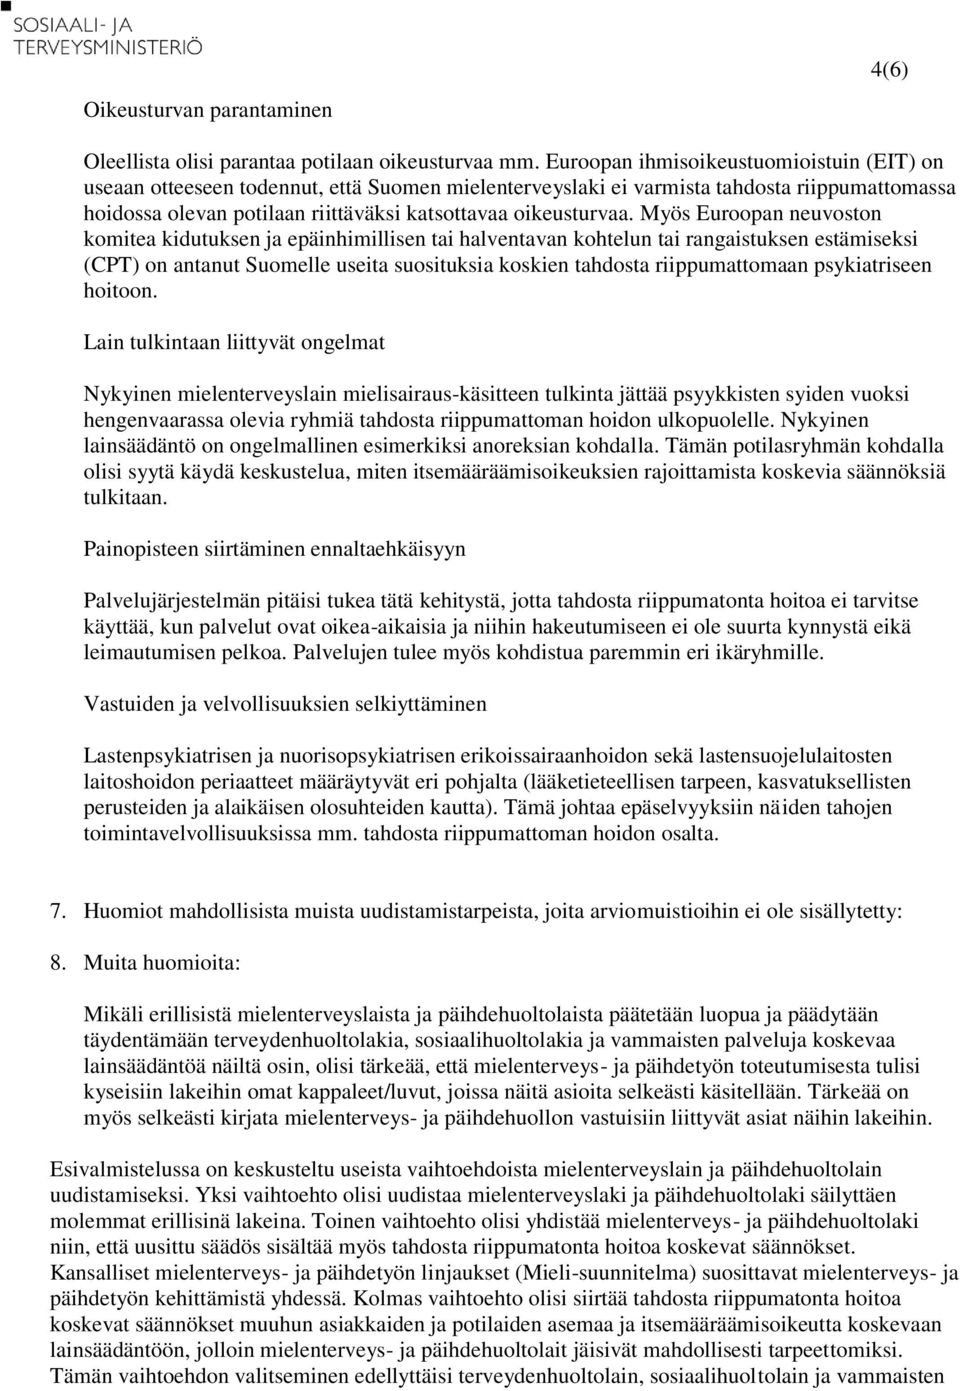 Myös Euroopan neuvoston komitea kidutuksen ja epäinhimillisen tai halventavan kohtelun tai rangaistuksen estämiseksi (CPT) on antanut Suomelle useita suosituksia koskien tahdosta riippumattomaan